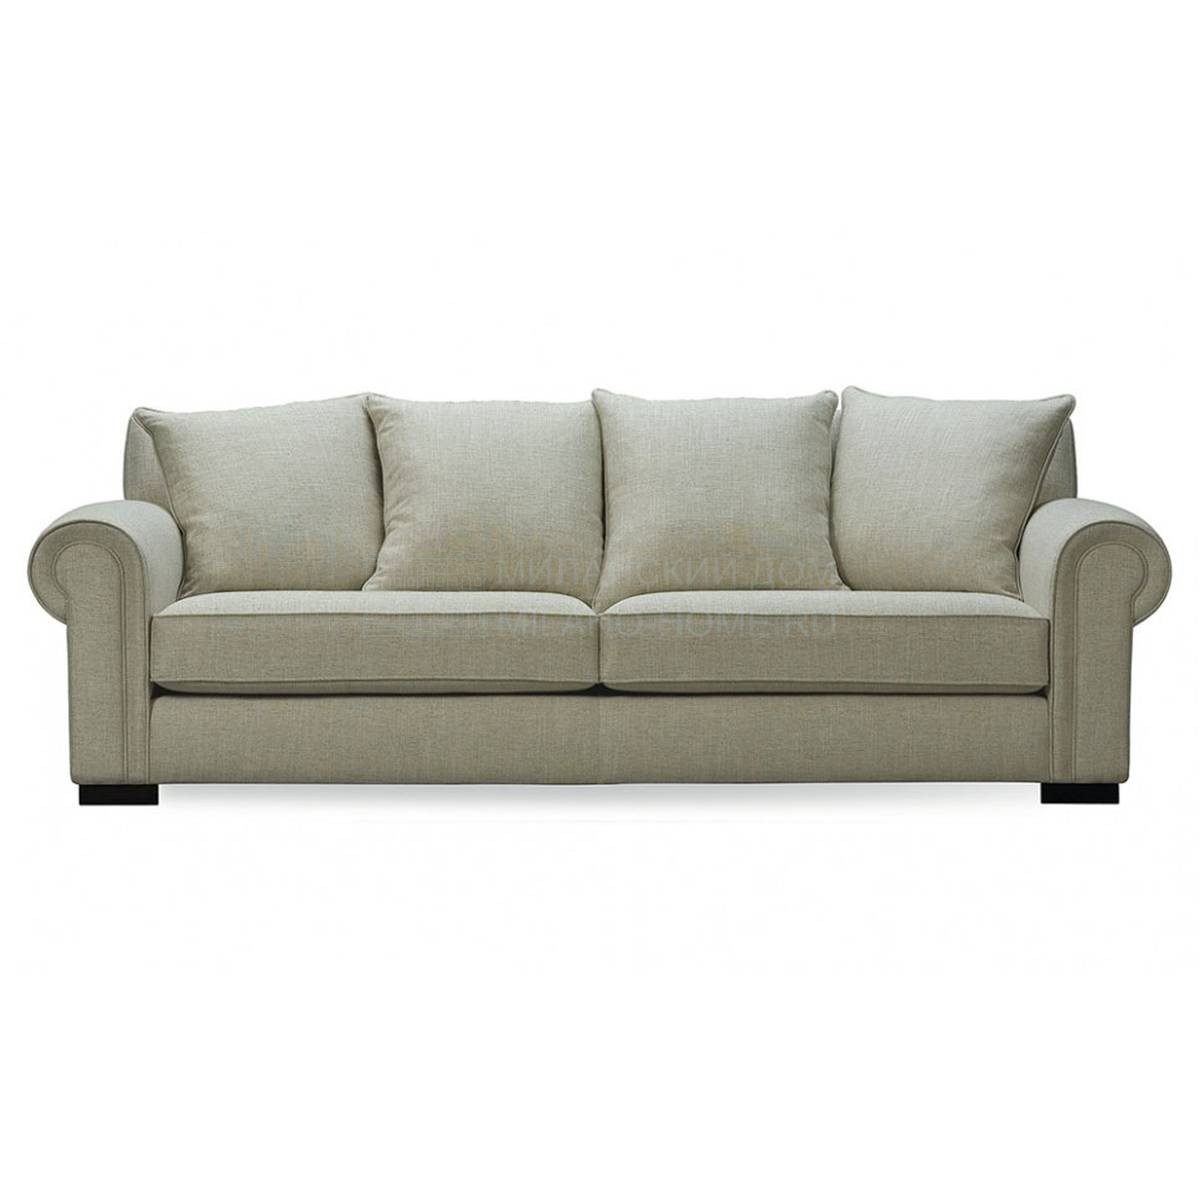 Прямой диван Bania/sofa из Испании фабрики MANUEL LARRAGA